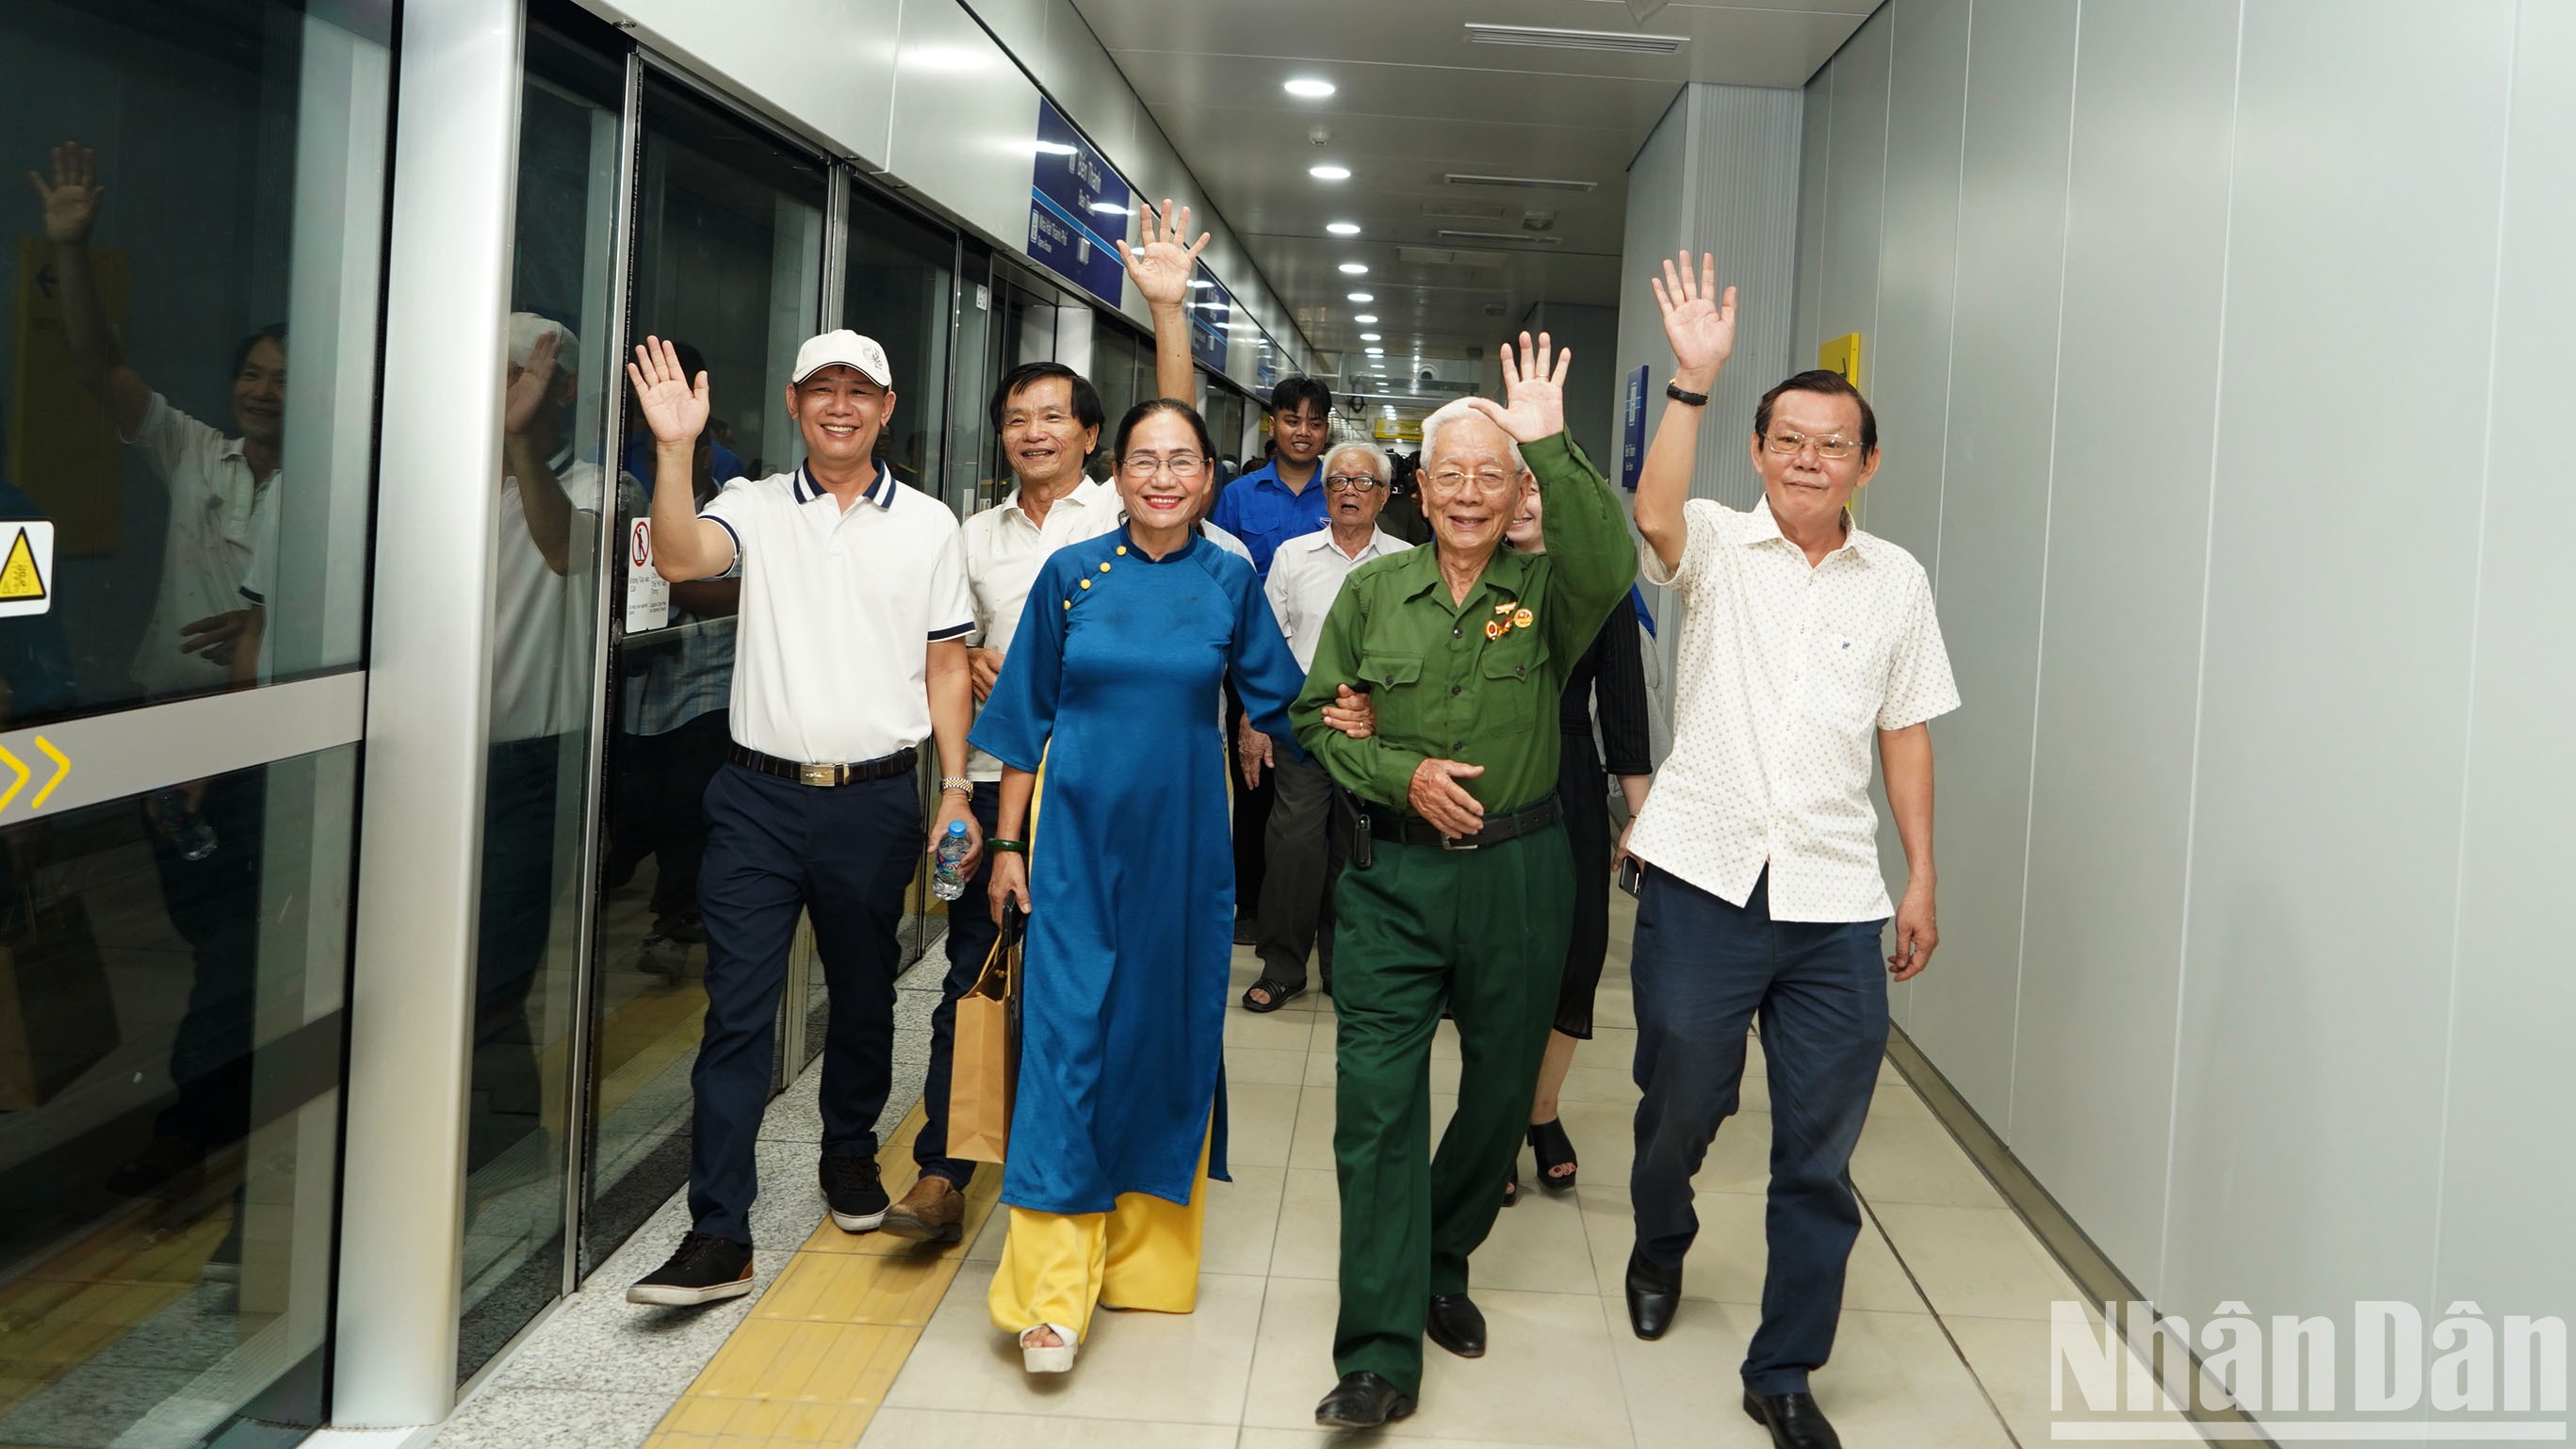 Ngay từ sáng sớm, hàng ngàn vị khách đặc biệt đã có buổi trải nghiệm đầy cảm xúc trong lần đầu tiên tuyến Metro số 1 Thành phố Hồ Chí Minh (Metro Bến Thành-Suối Tiên) chạy thử nghiệm tự động trên toàn tuyến.